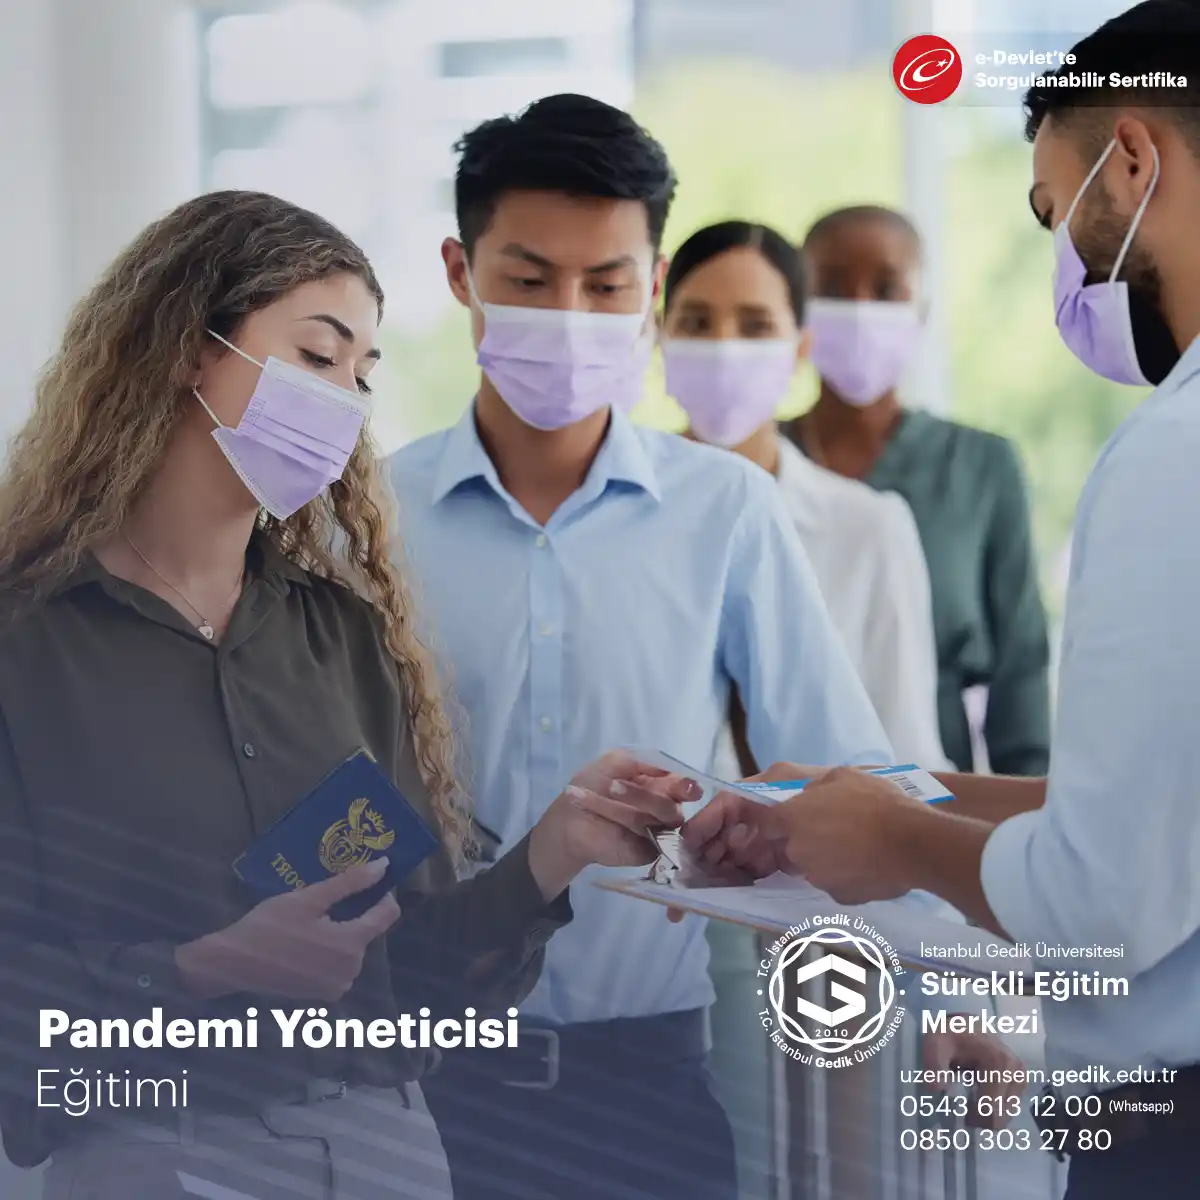 Katılımcılar, pandemi sürecini başarılı bir şekilde yönetebilmek için gereken bilgi, beceri ve stratejileri öğrenirler.